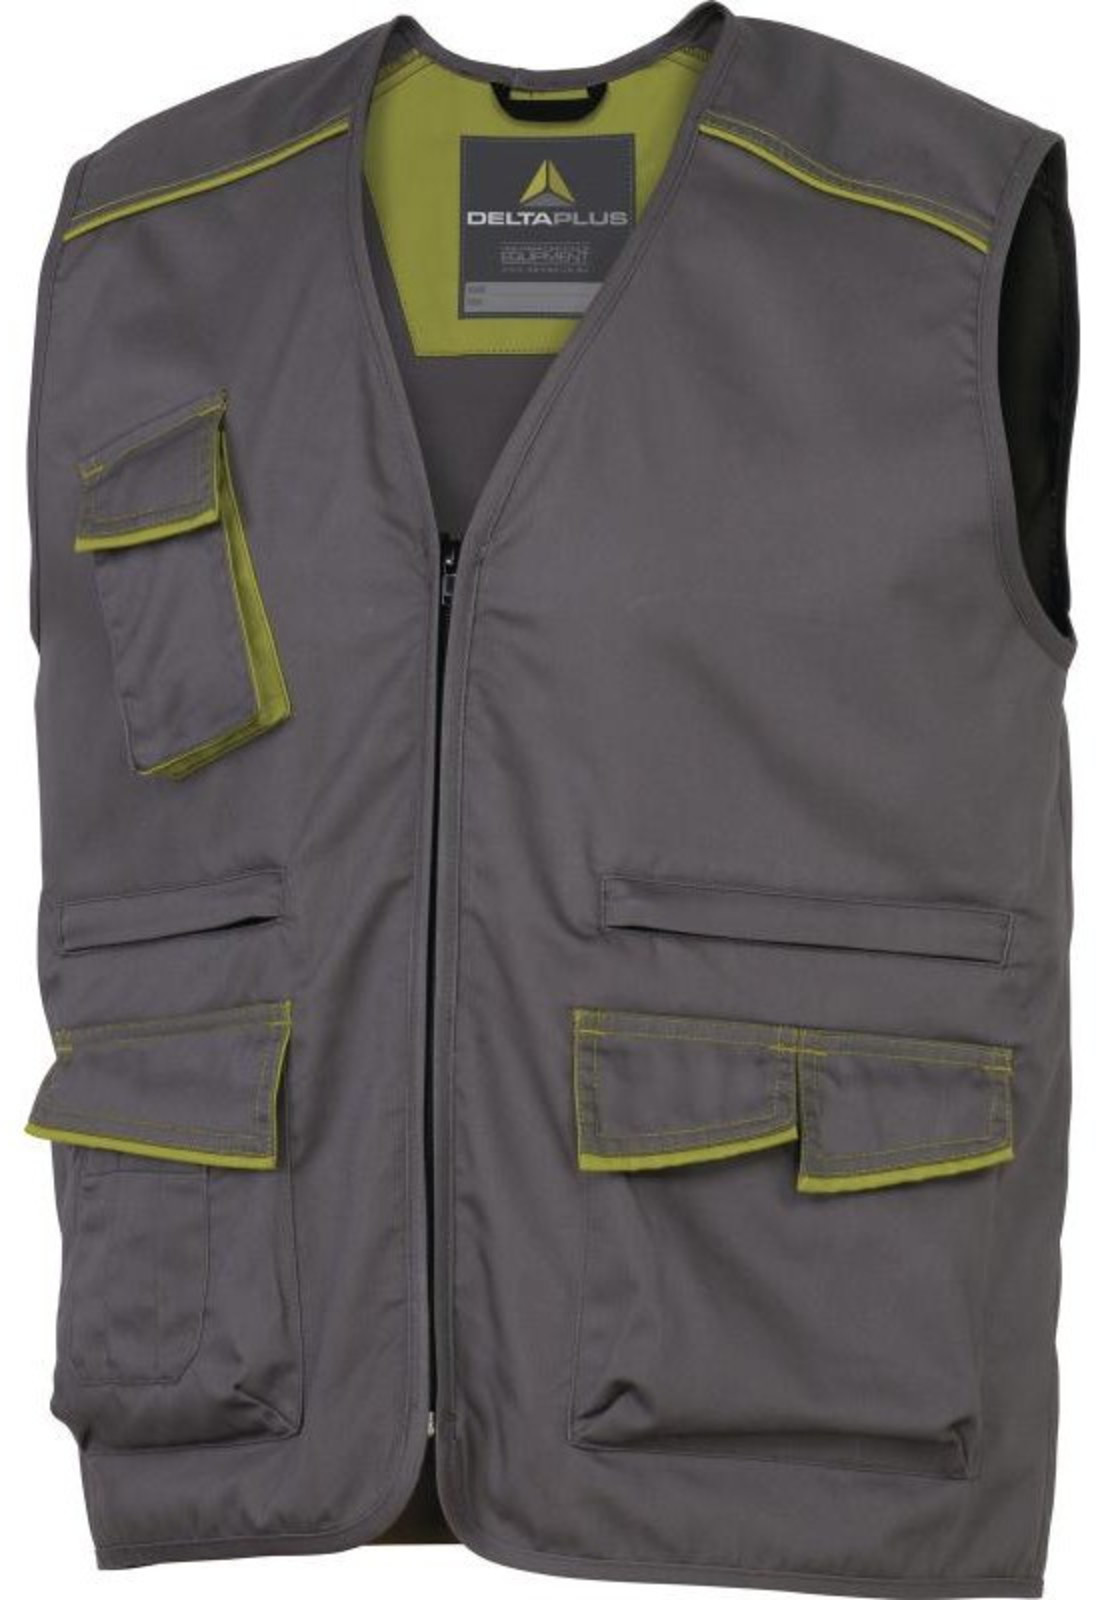 Pracovná vesta Delta Plus Panostyle M6gil  - veľkosť: 3XL, farba: sivá/zelená